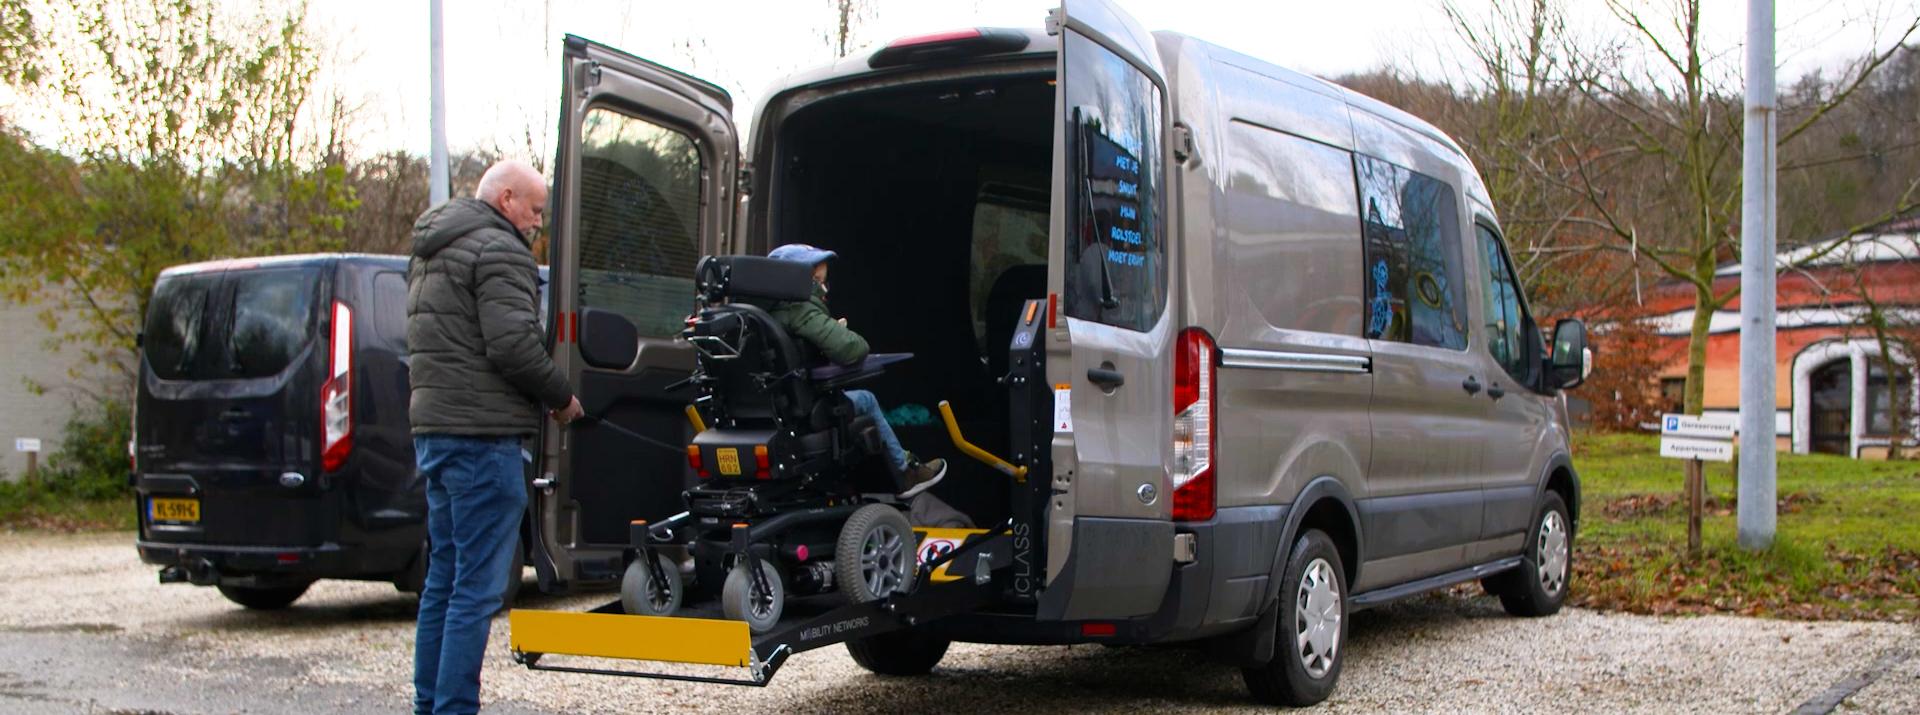 Gehandicaptenvervoer rolstoelbus